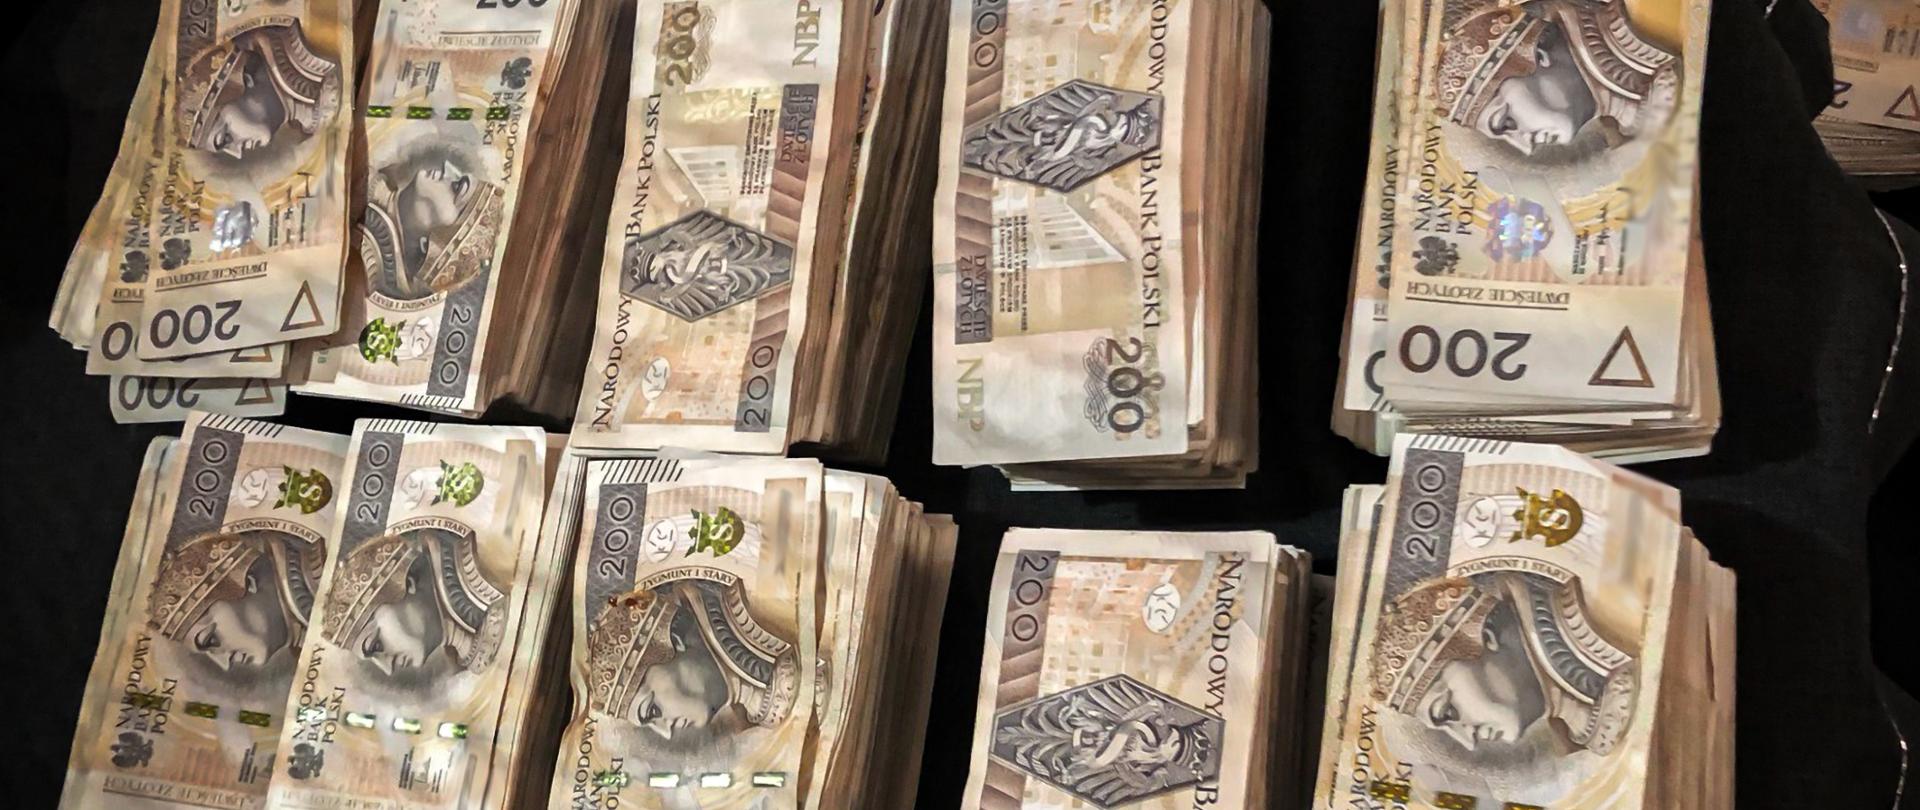 Na polecenie prokuratora Zachodniopomorskiego pionu PZ PK zatrzymano 19 osób w śledztwie dotyczącym zorganizowanych grup przestępczych, które wystawiły „puste” faktury VAT na 1,5 miliarda złotych 